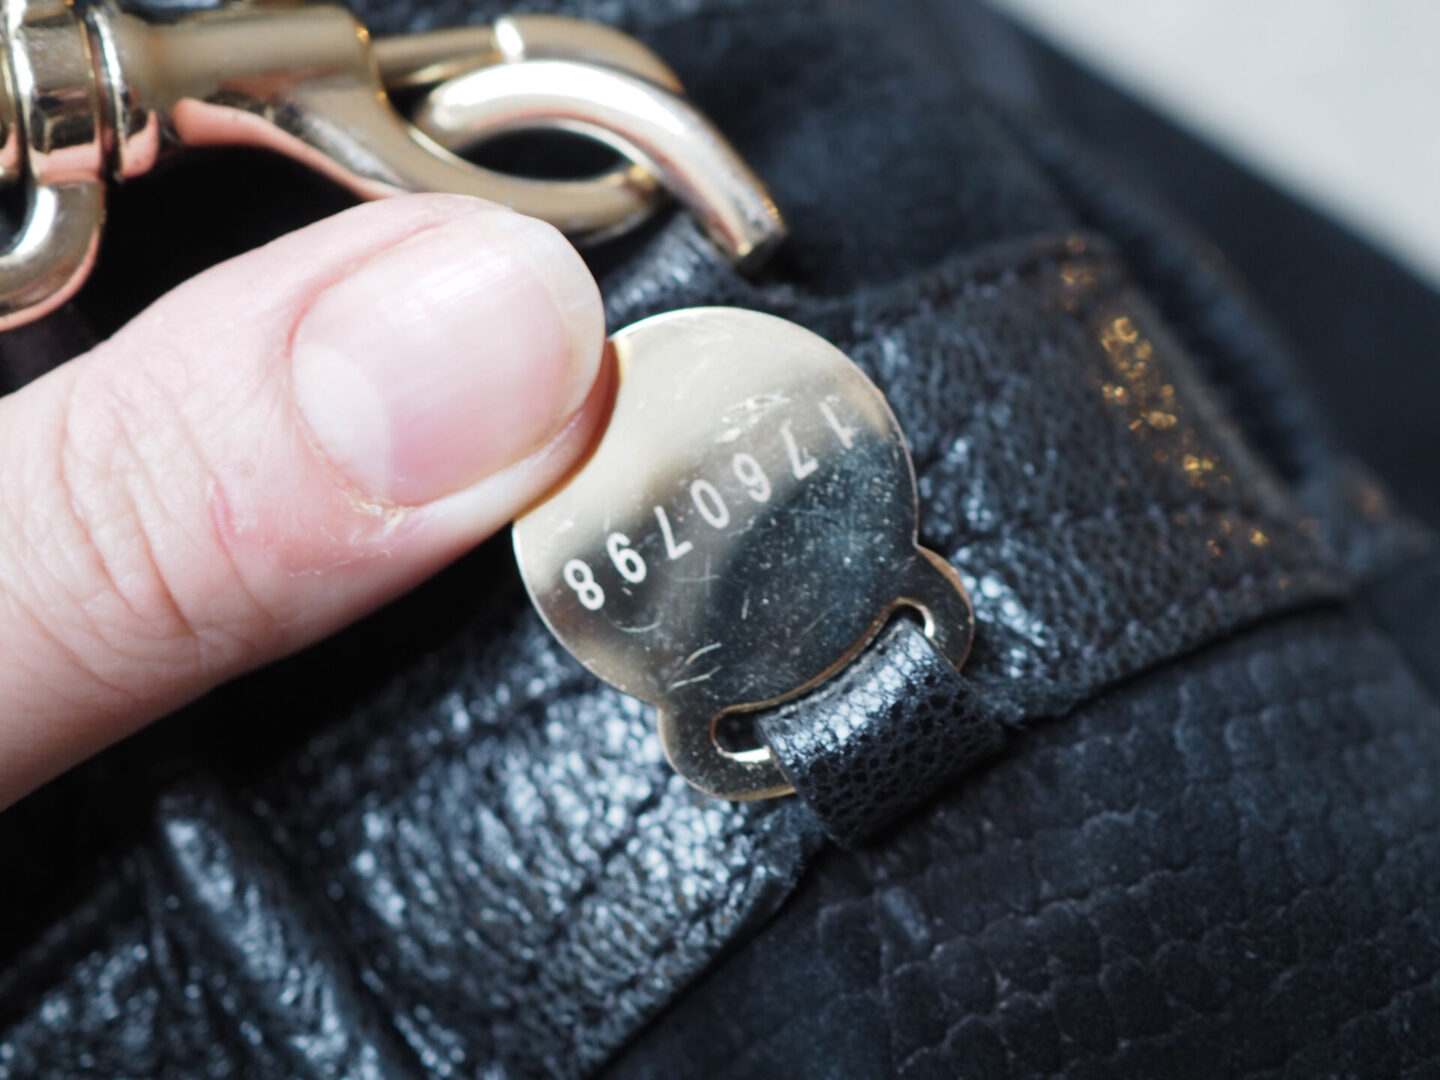 how to spot fake mulberry handbag